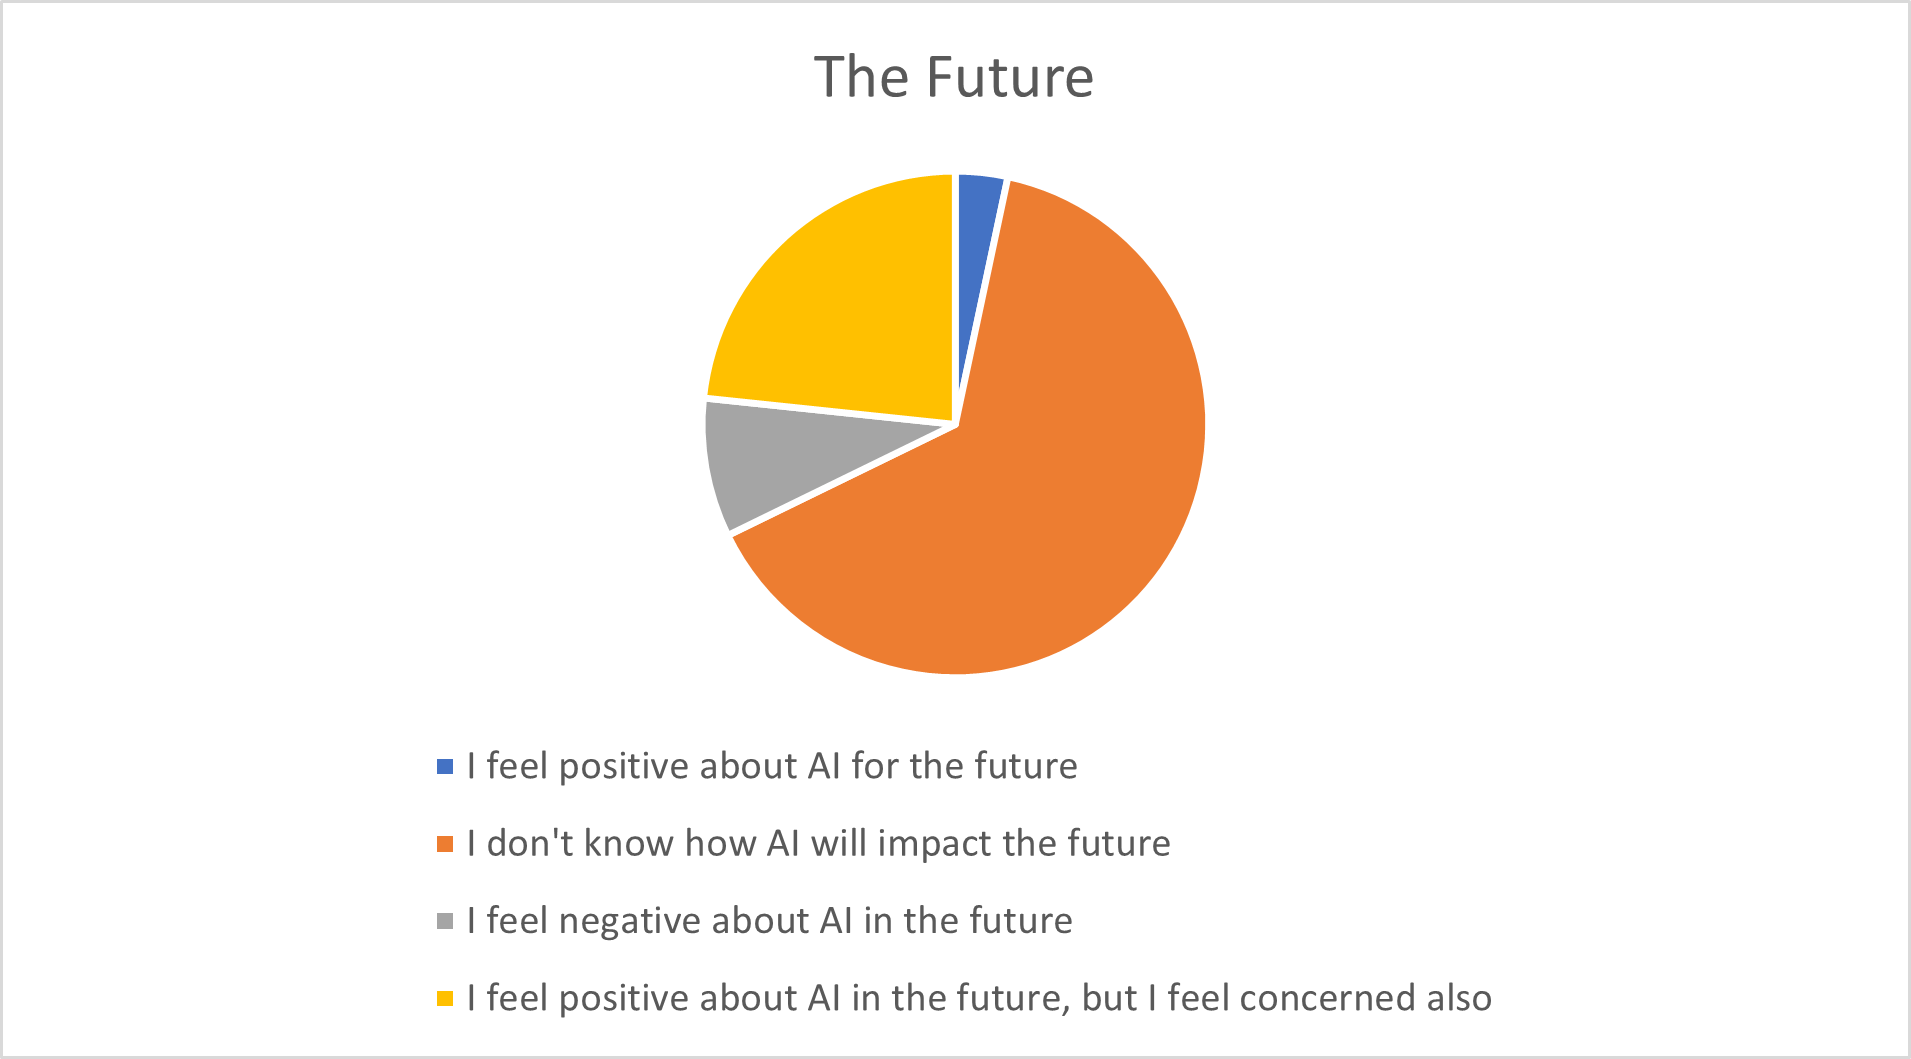 The Future